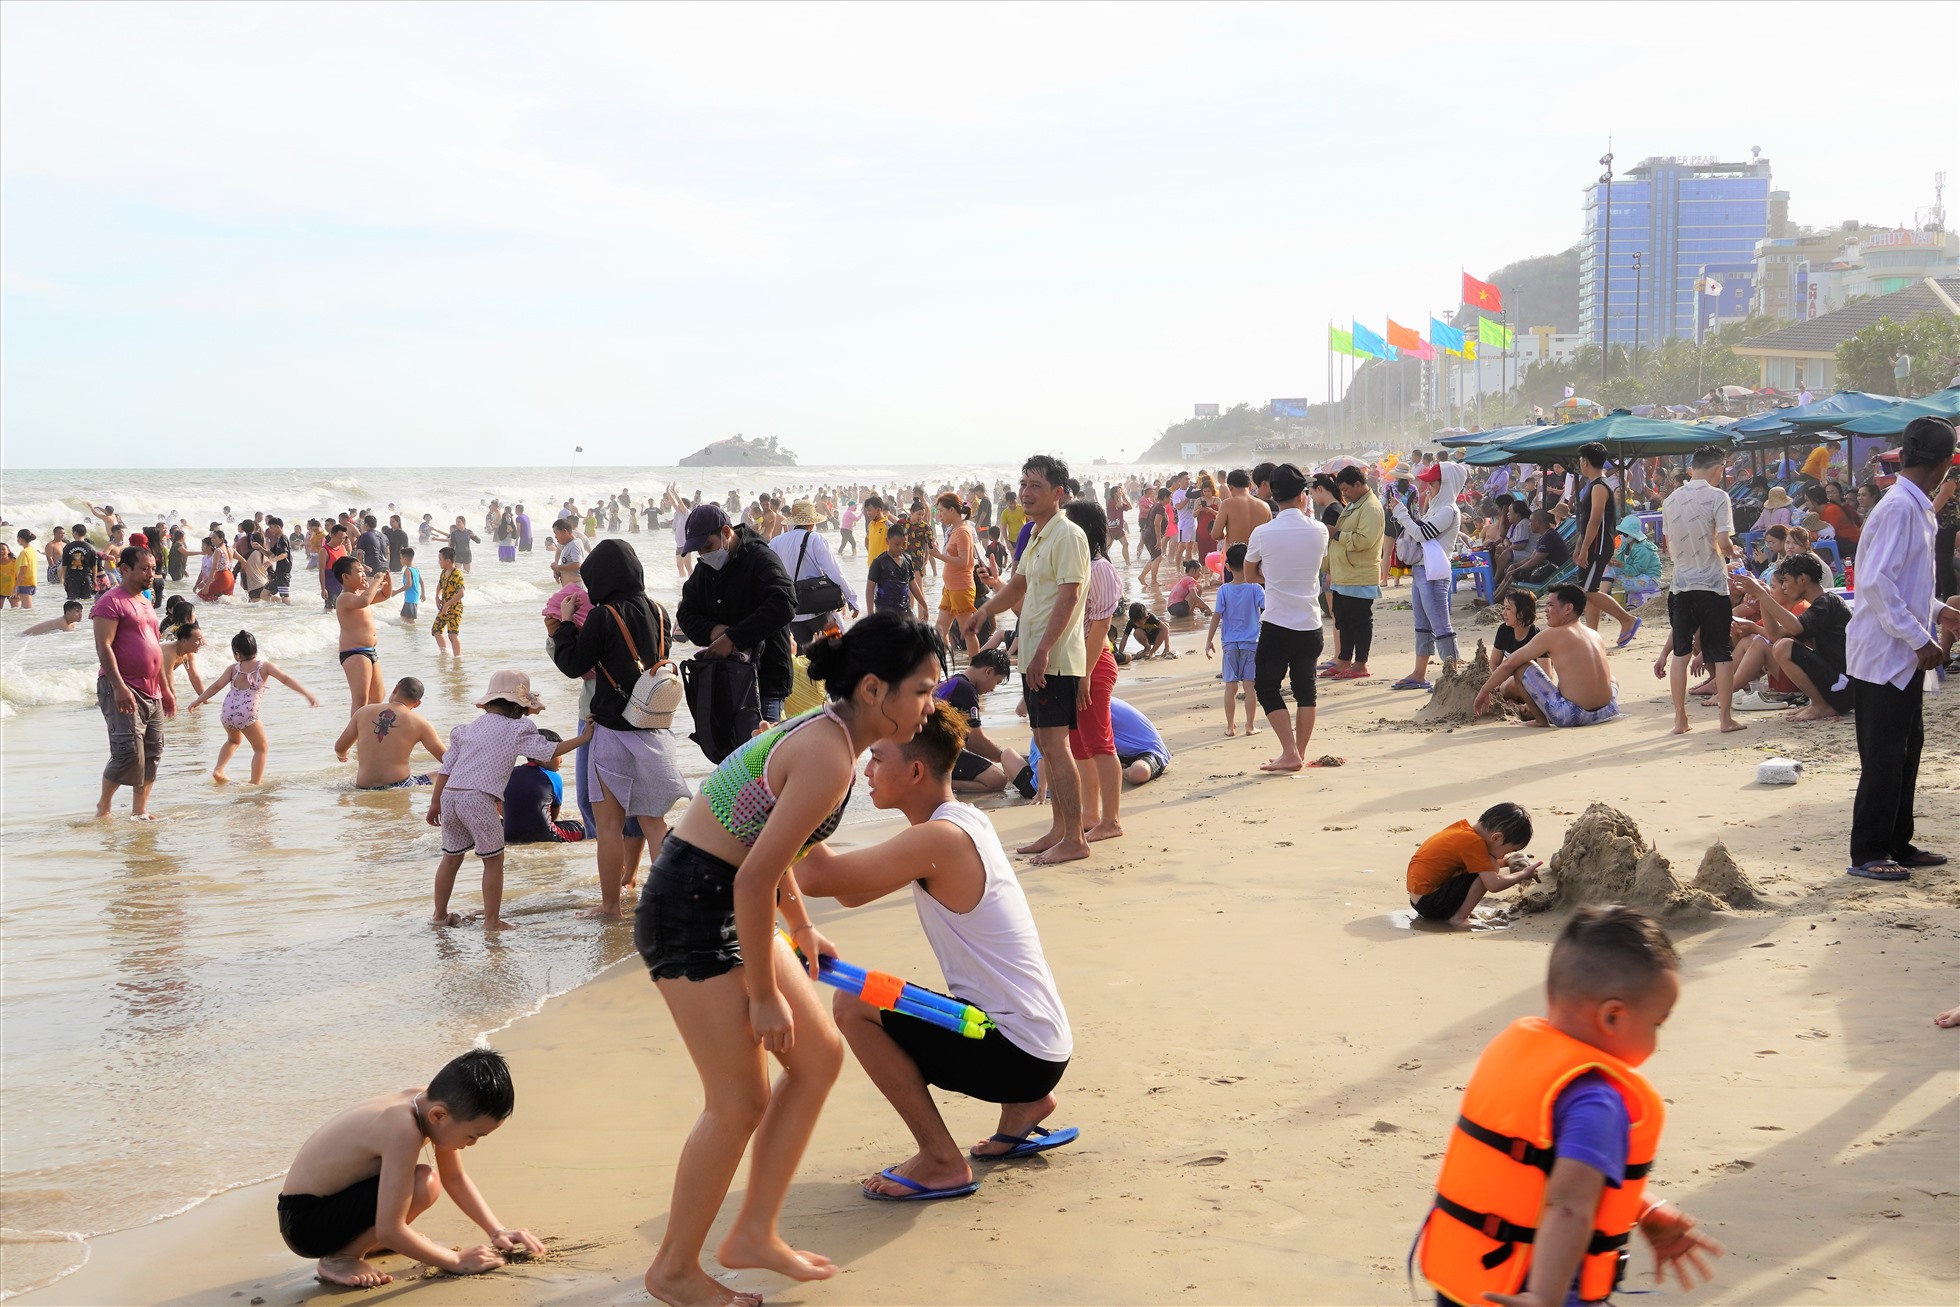 Biển đông người, nhưng thủy triều dâng khá cao làm phần bãi cát trở nên chật hẹp trước số lượng đông du khách. Ảnh: Thành An